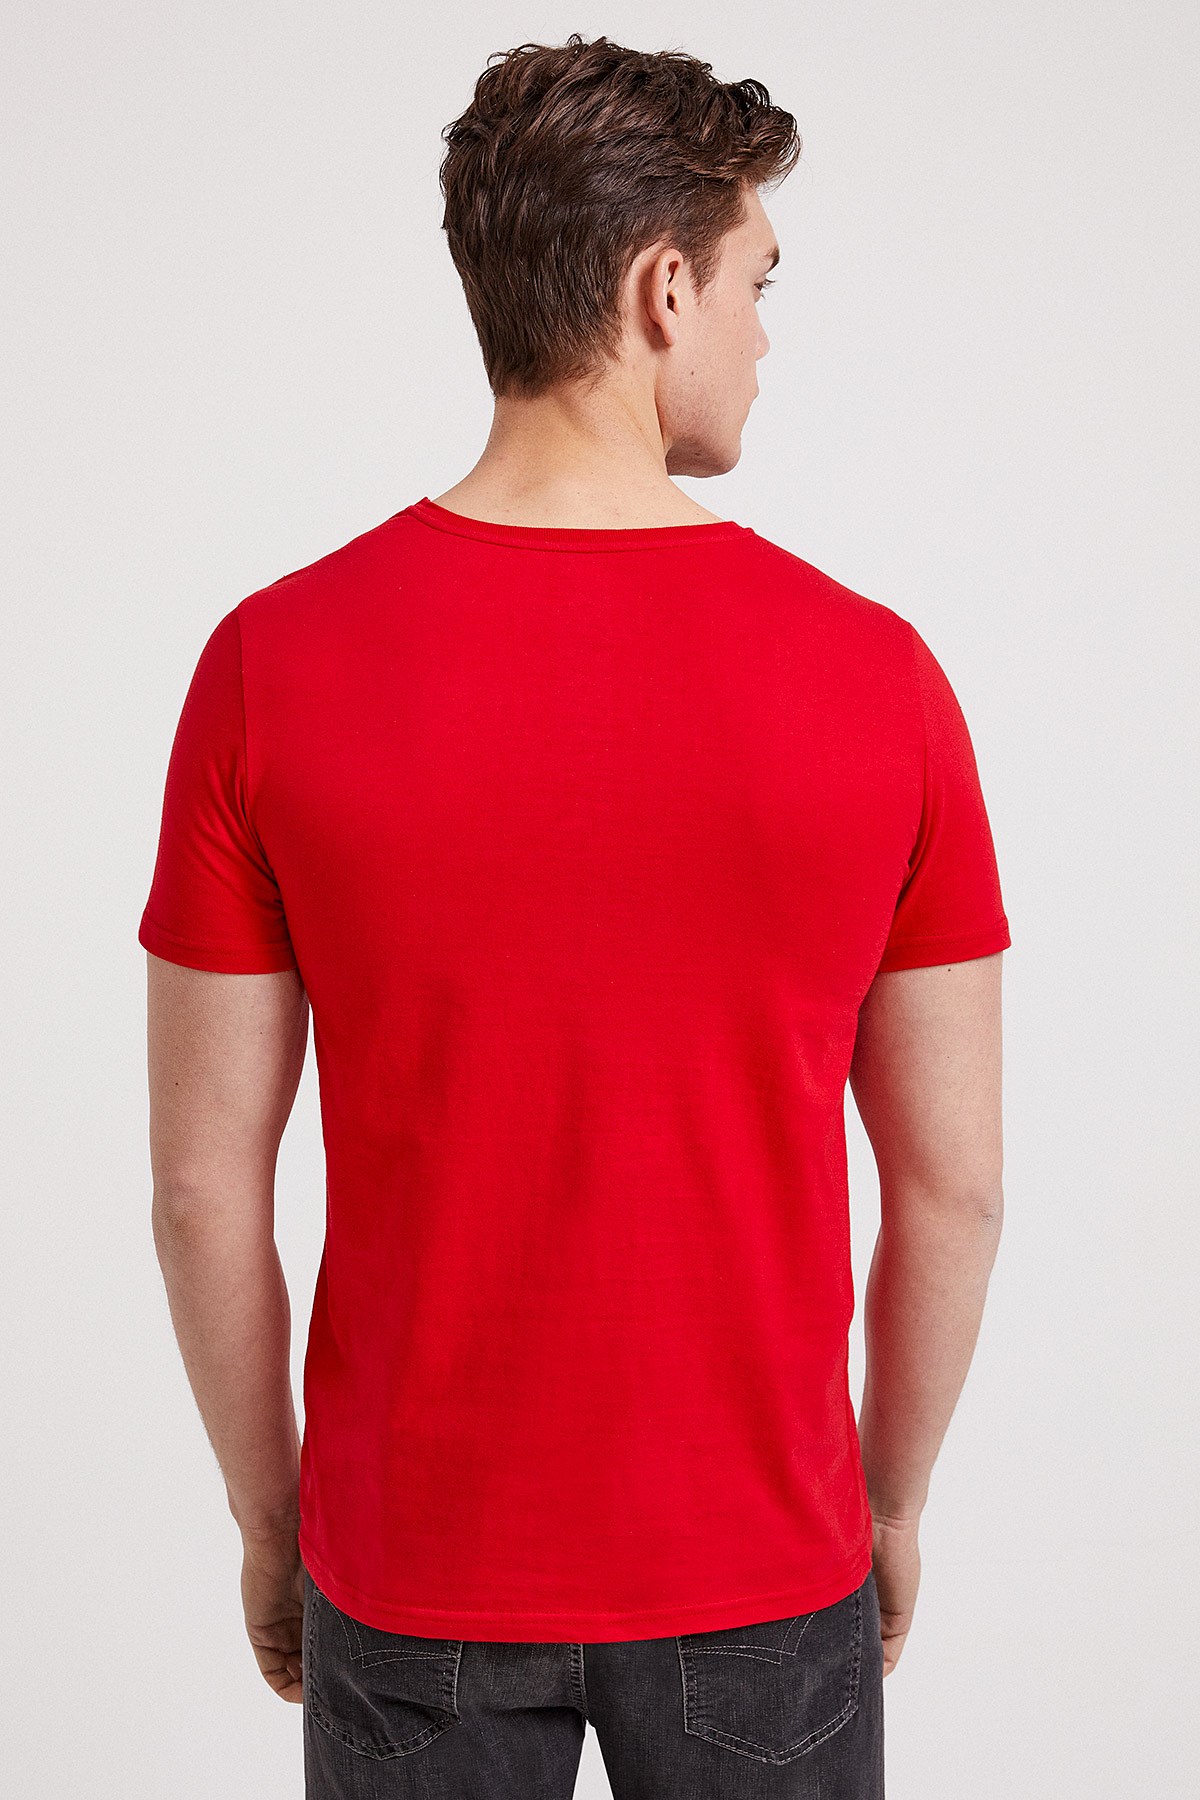 Lee Cooper Erkek T-Shirt 202 LCM 242011 Kırmızı